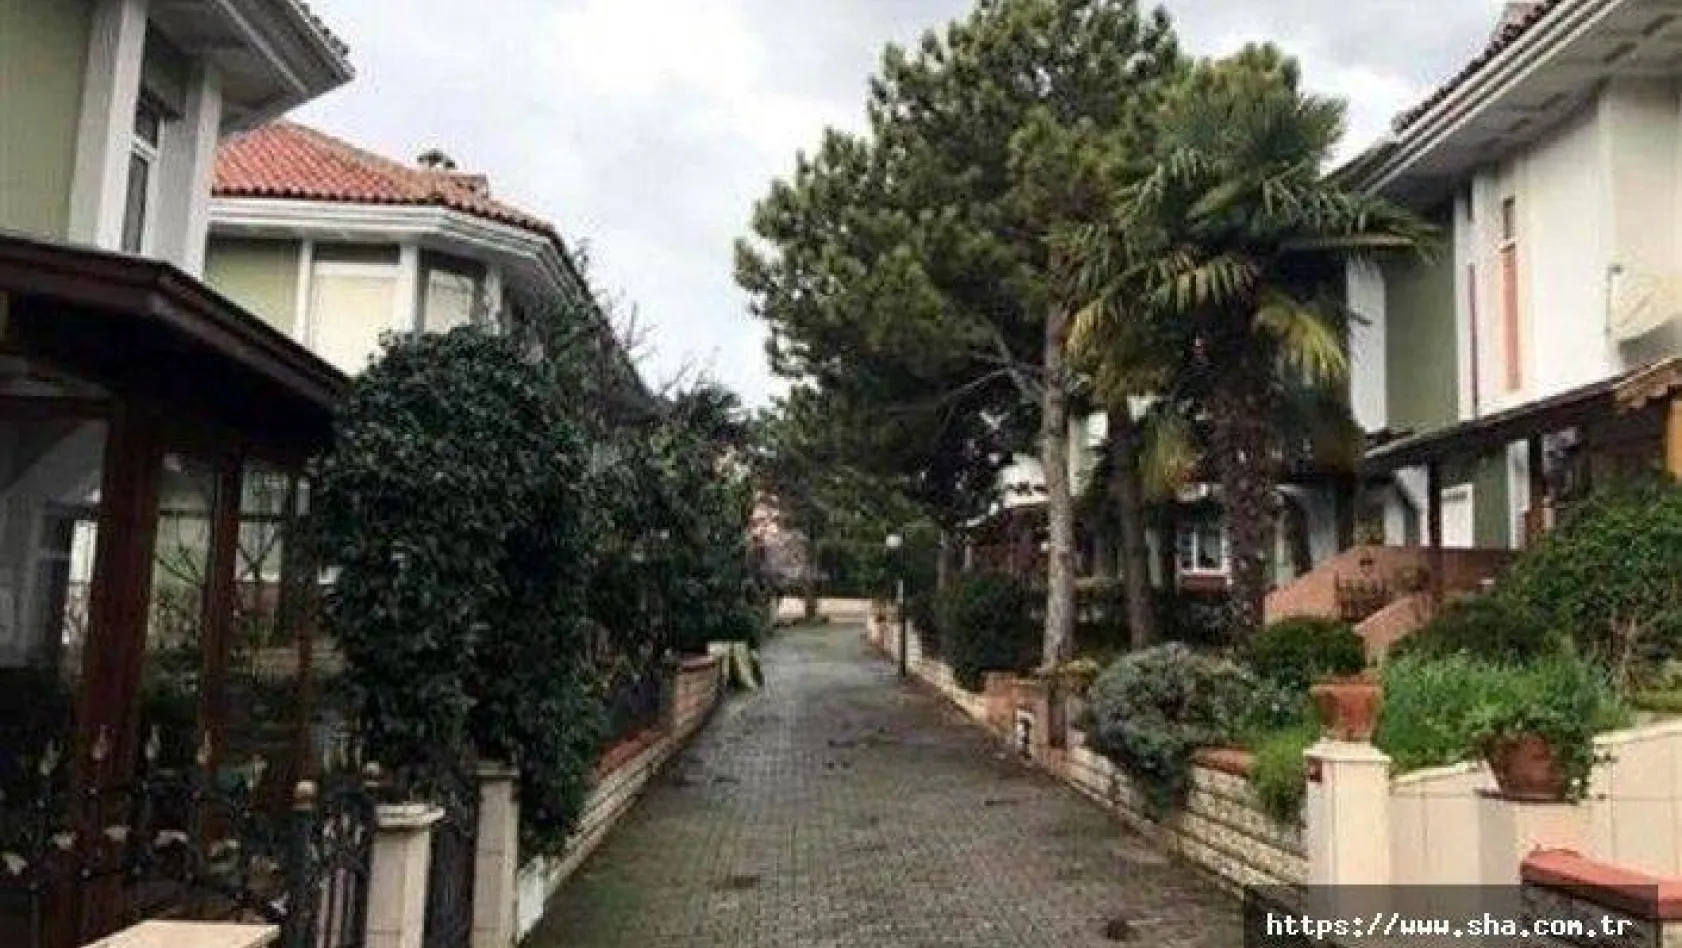 Hem İstanbul'a yakın, hem yazlık konut fiyatı arasında en uygun yer: Silivri